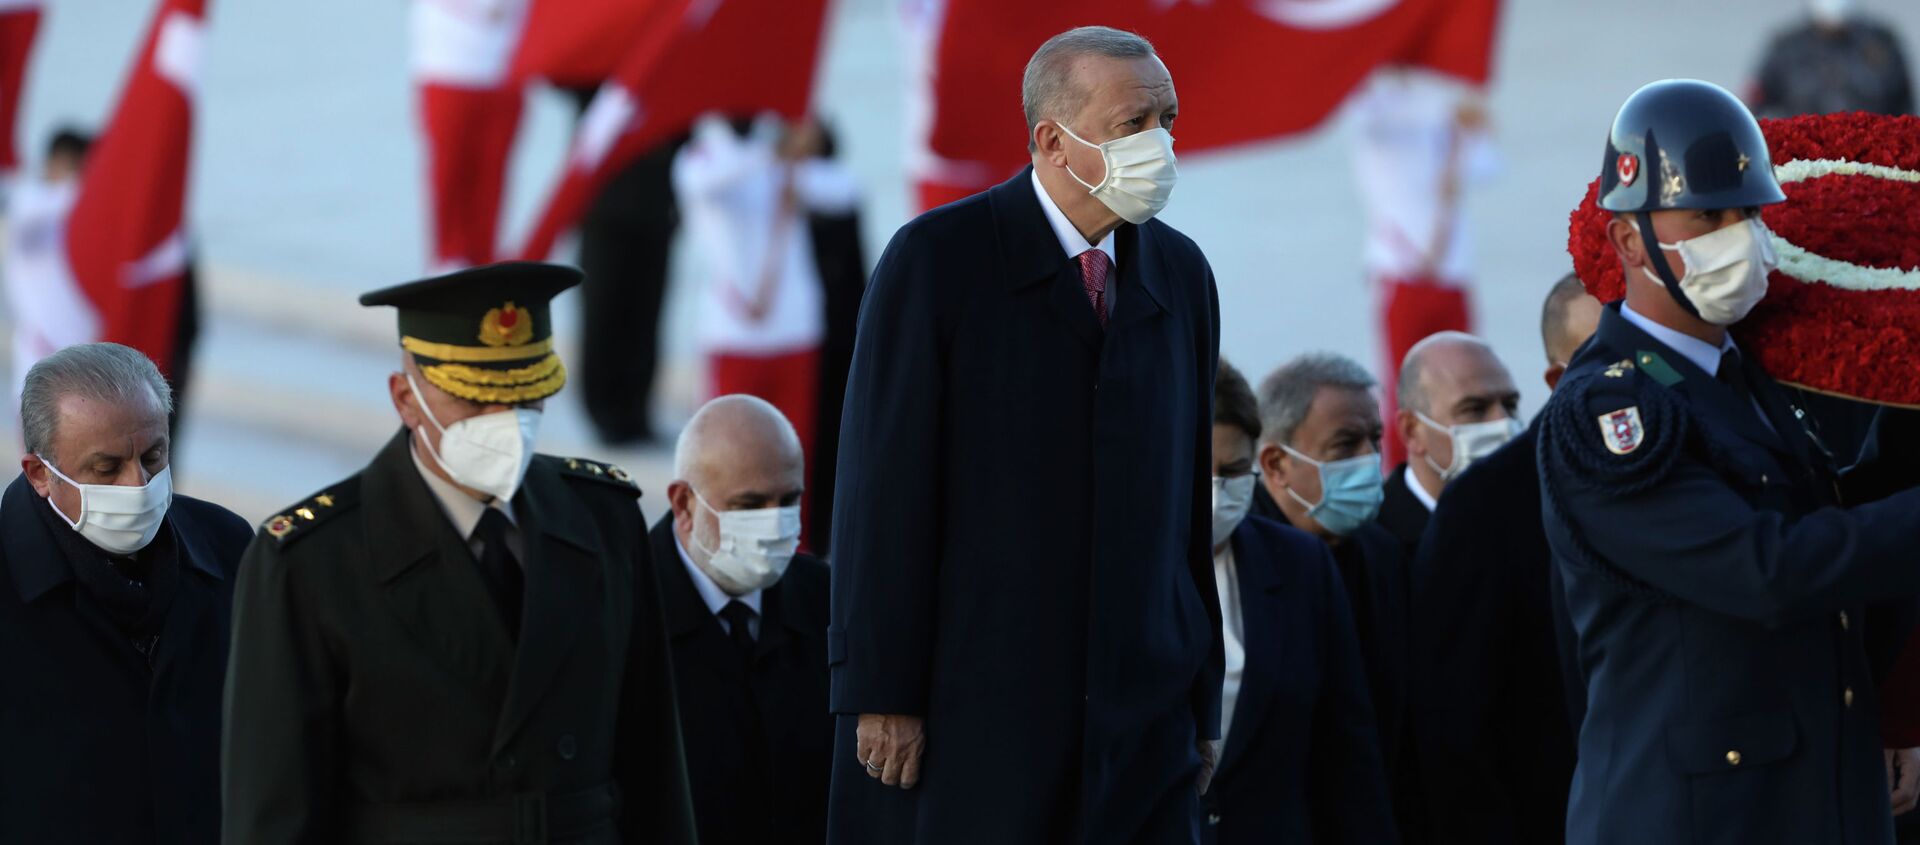 Президент Турции Реджеп Тайип Эрдоган во время поминальной церемонии Мустафы Кемаля Ататюрка в Анкаре - Sputnik Кыргызстан, 1920, 16.11.2021